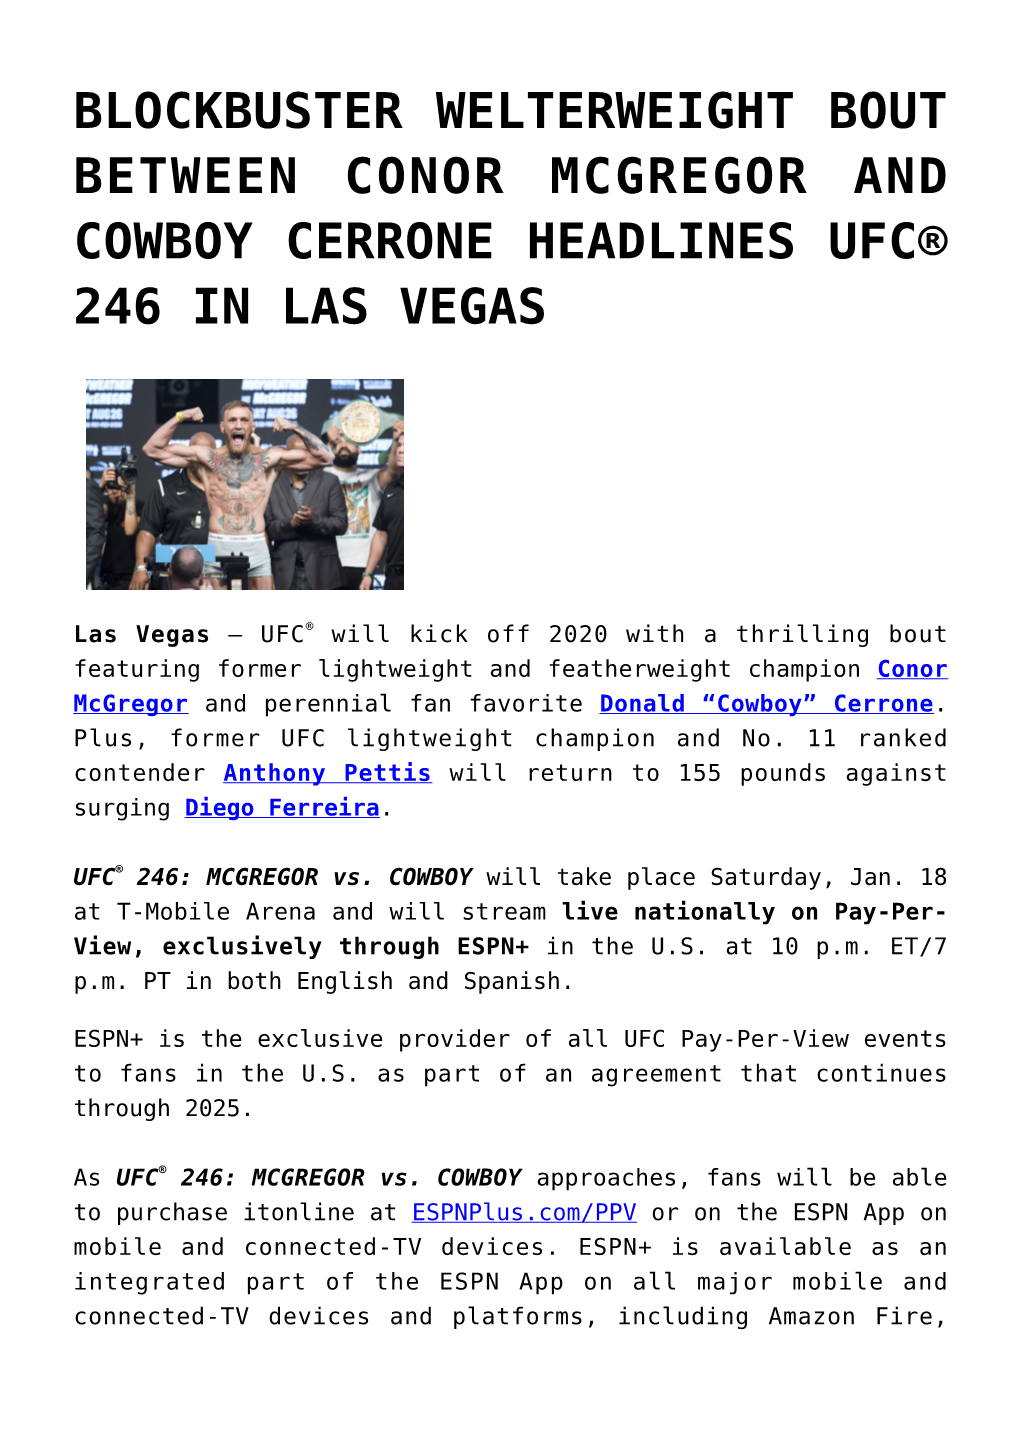 Blockbuster Welterweight Bout Between Conor Mcgregor and Cowboy Cerrone Headlines Ufc® 246 in Las Vegas